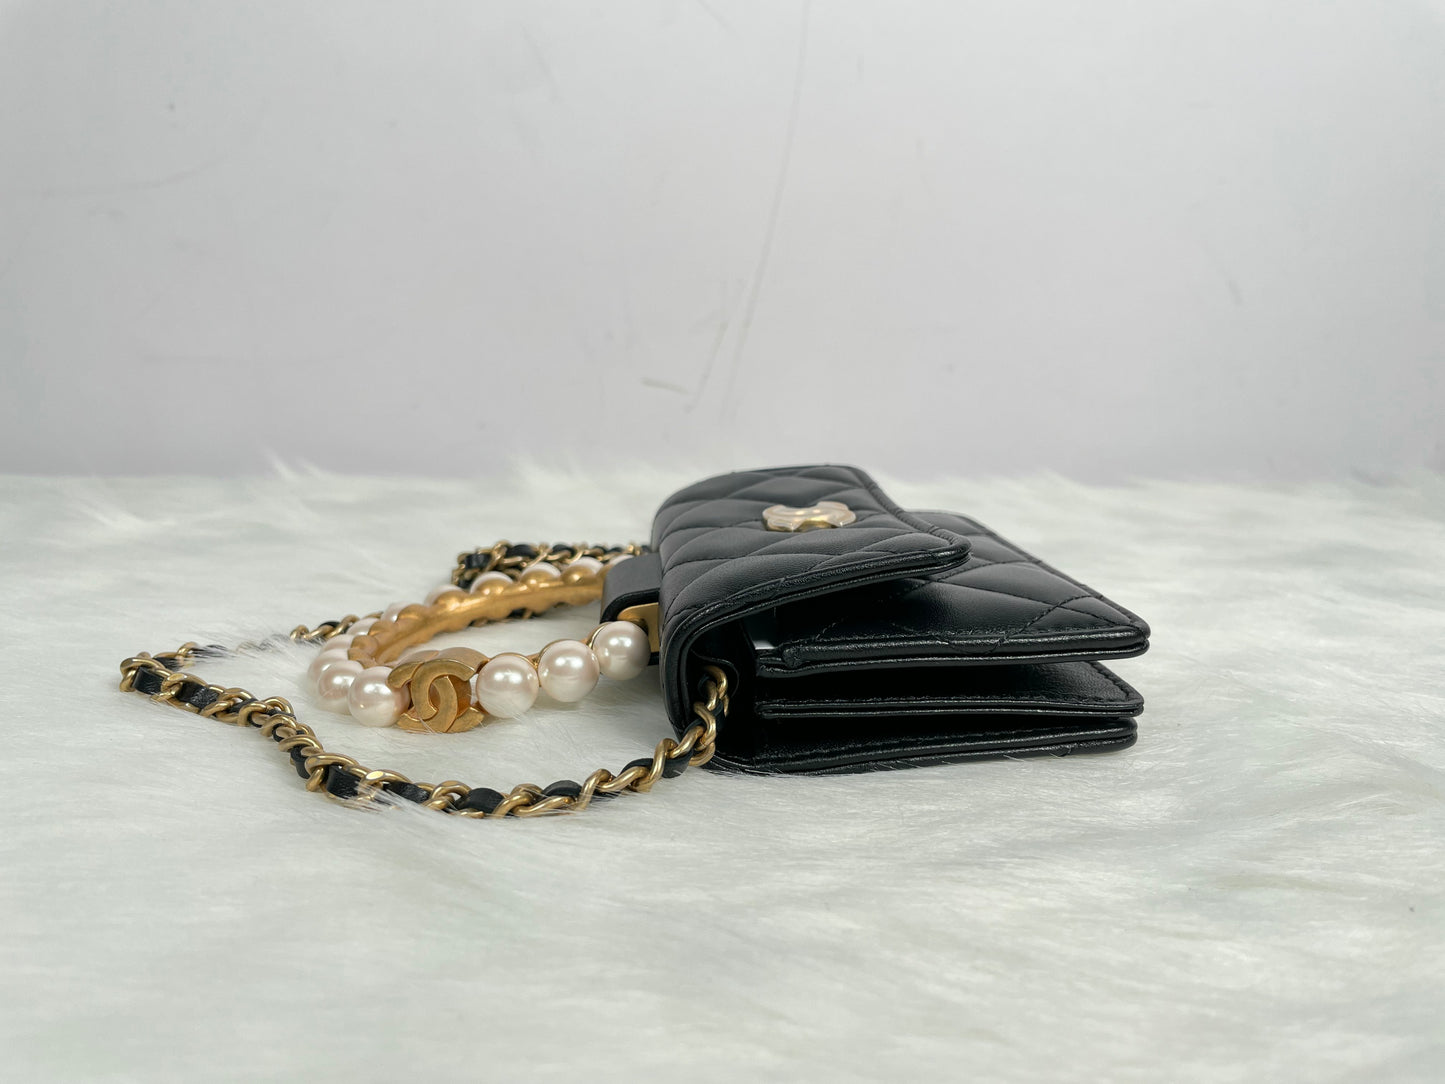 Chanel Clutch With Chain 黑色羊皮金扣珍珠手挽